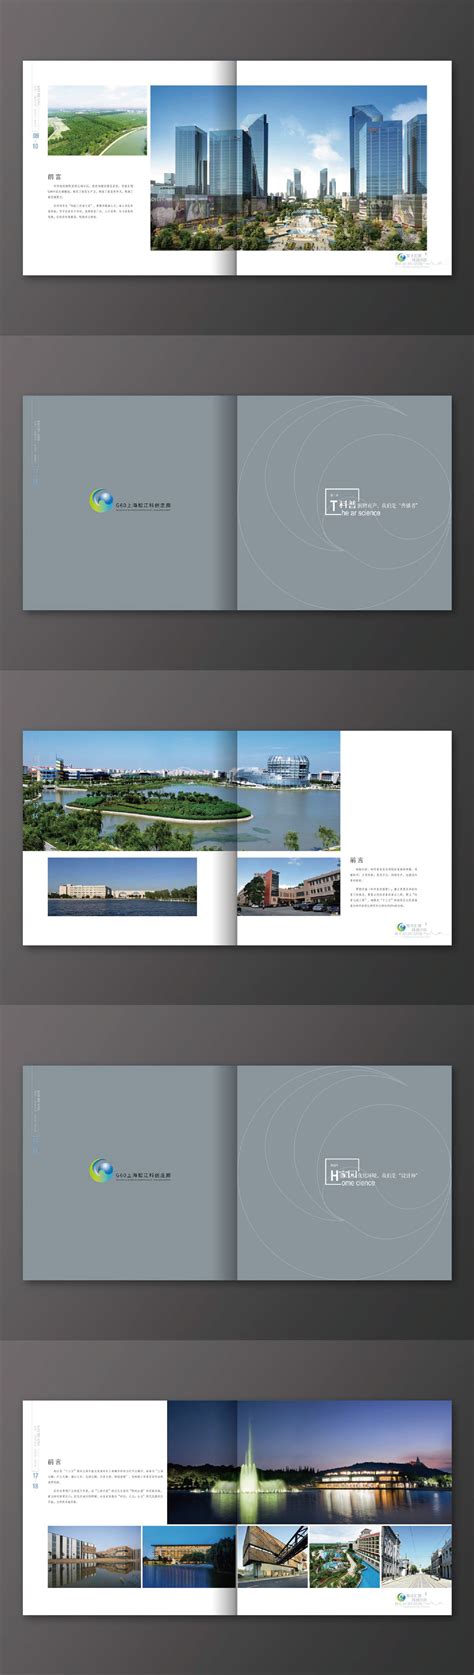 上海金陵松江现代产业服务园规划方案设计-办公建筑-筑龙建筑设计论坛